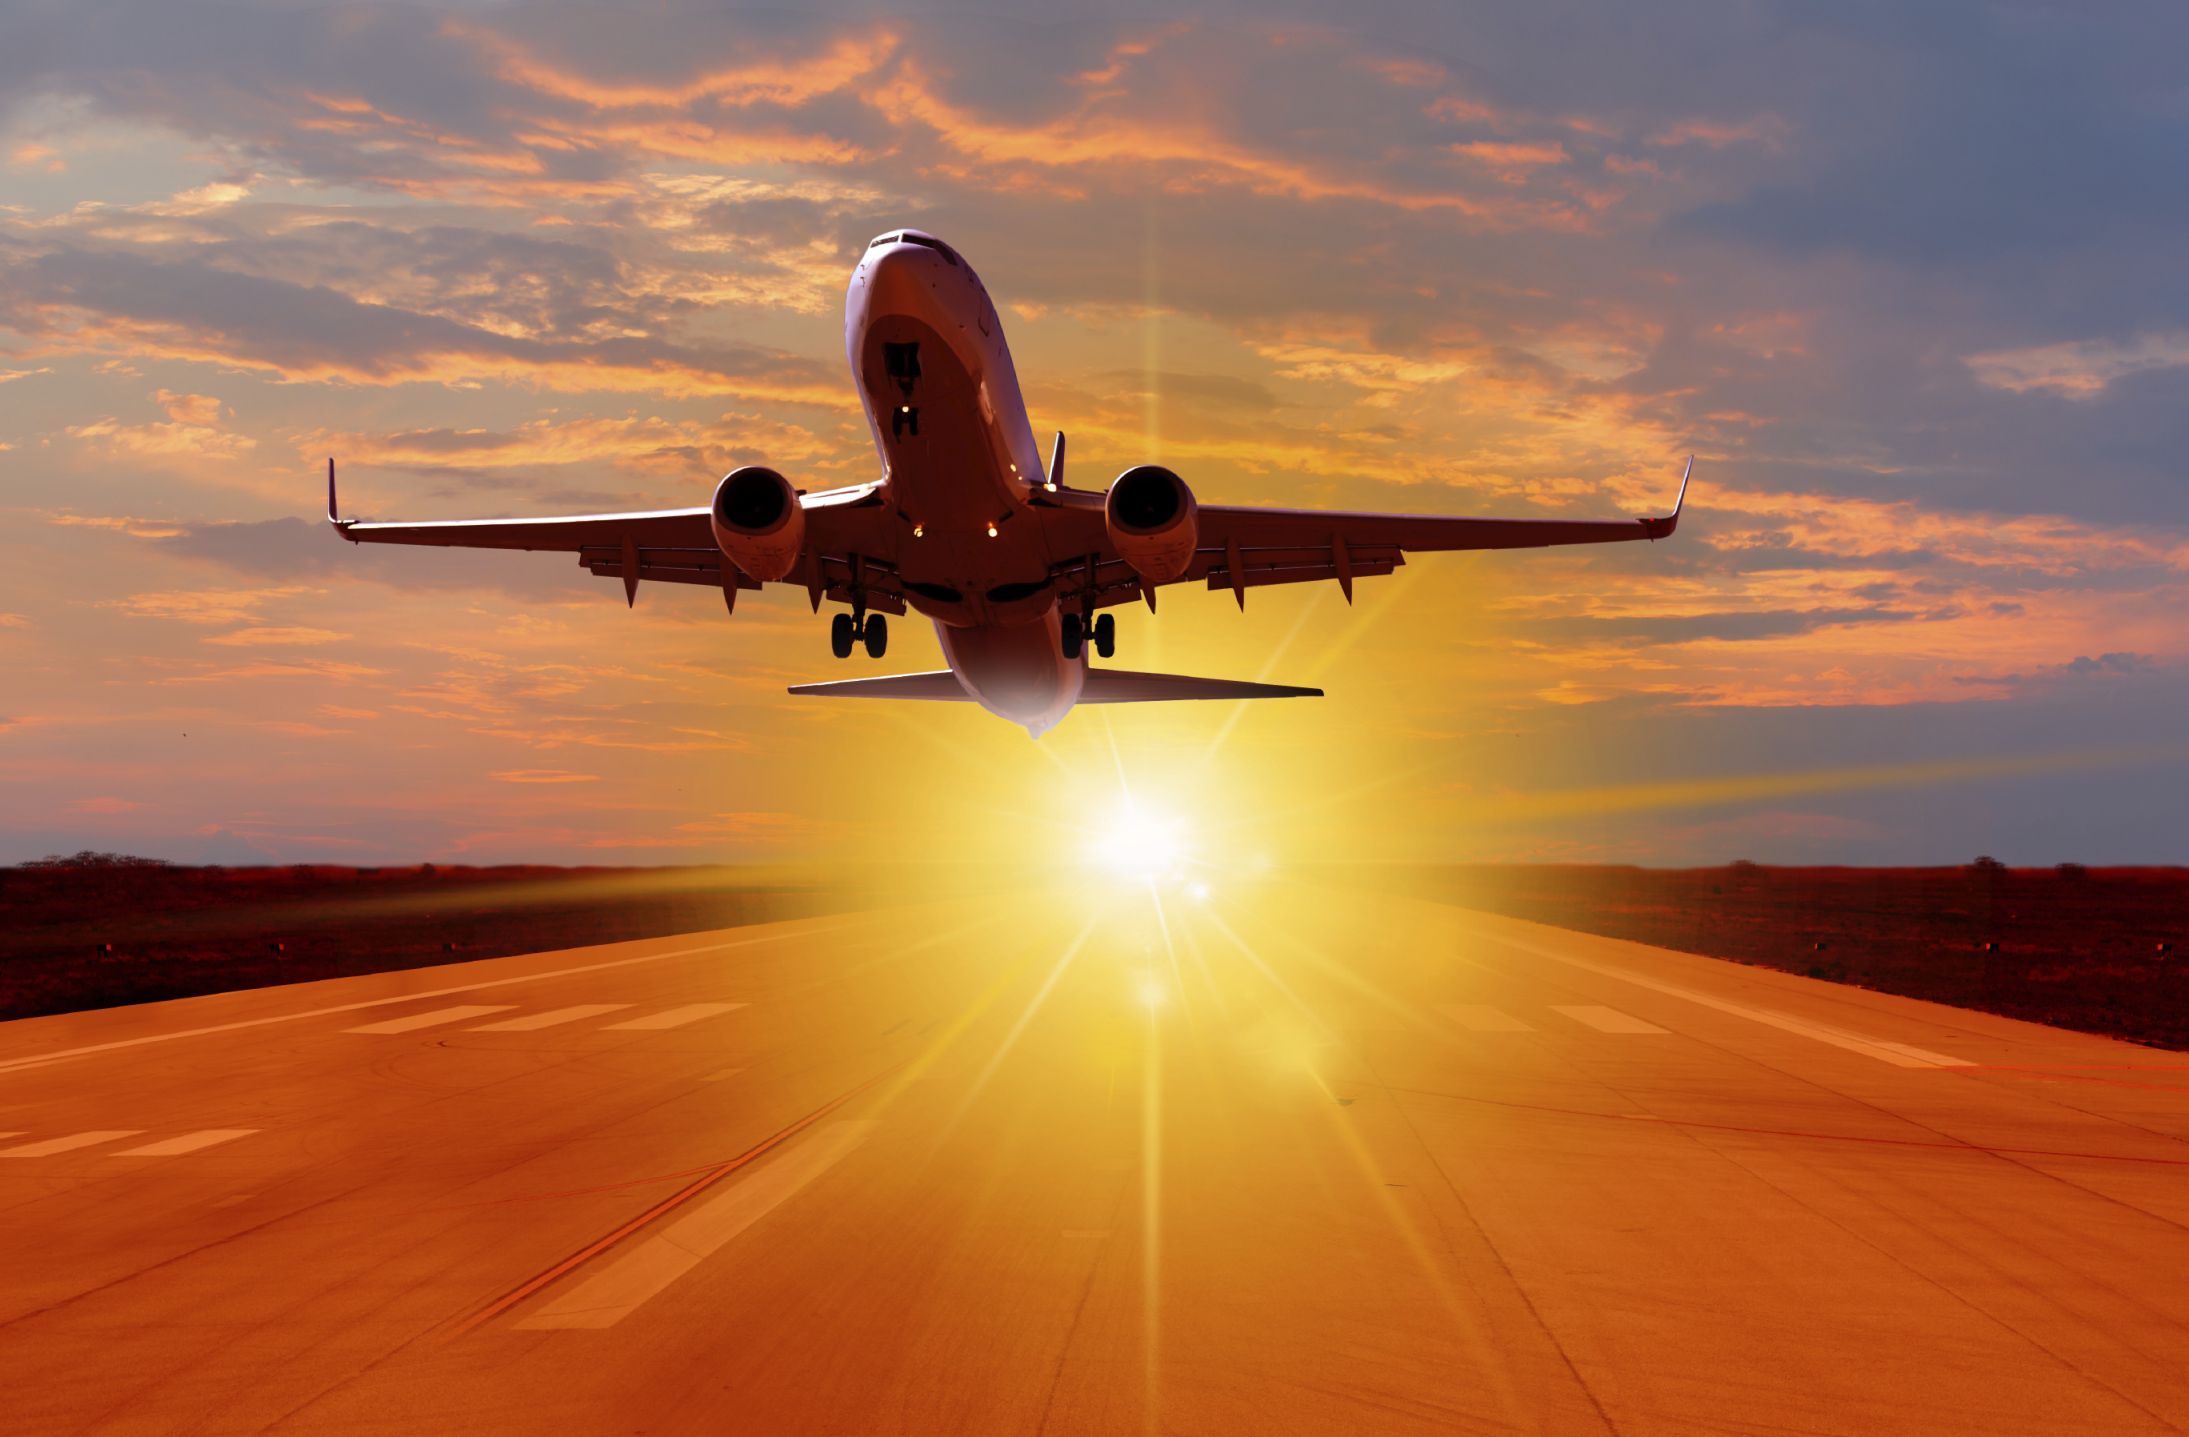 Տասնյակ ավիաընկերություններ կվերսկսեն կանոնավոր ավիաչվերթները դեպի Հայաստան. Փաշինյան